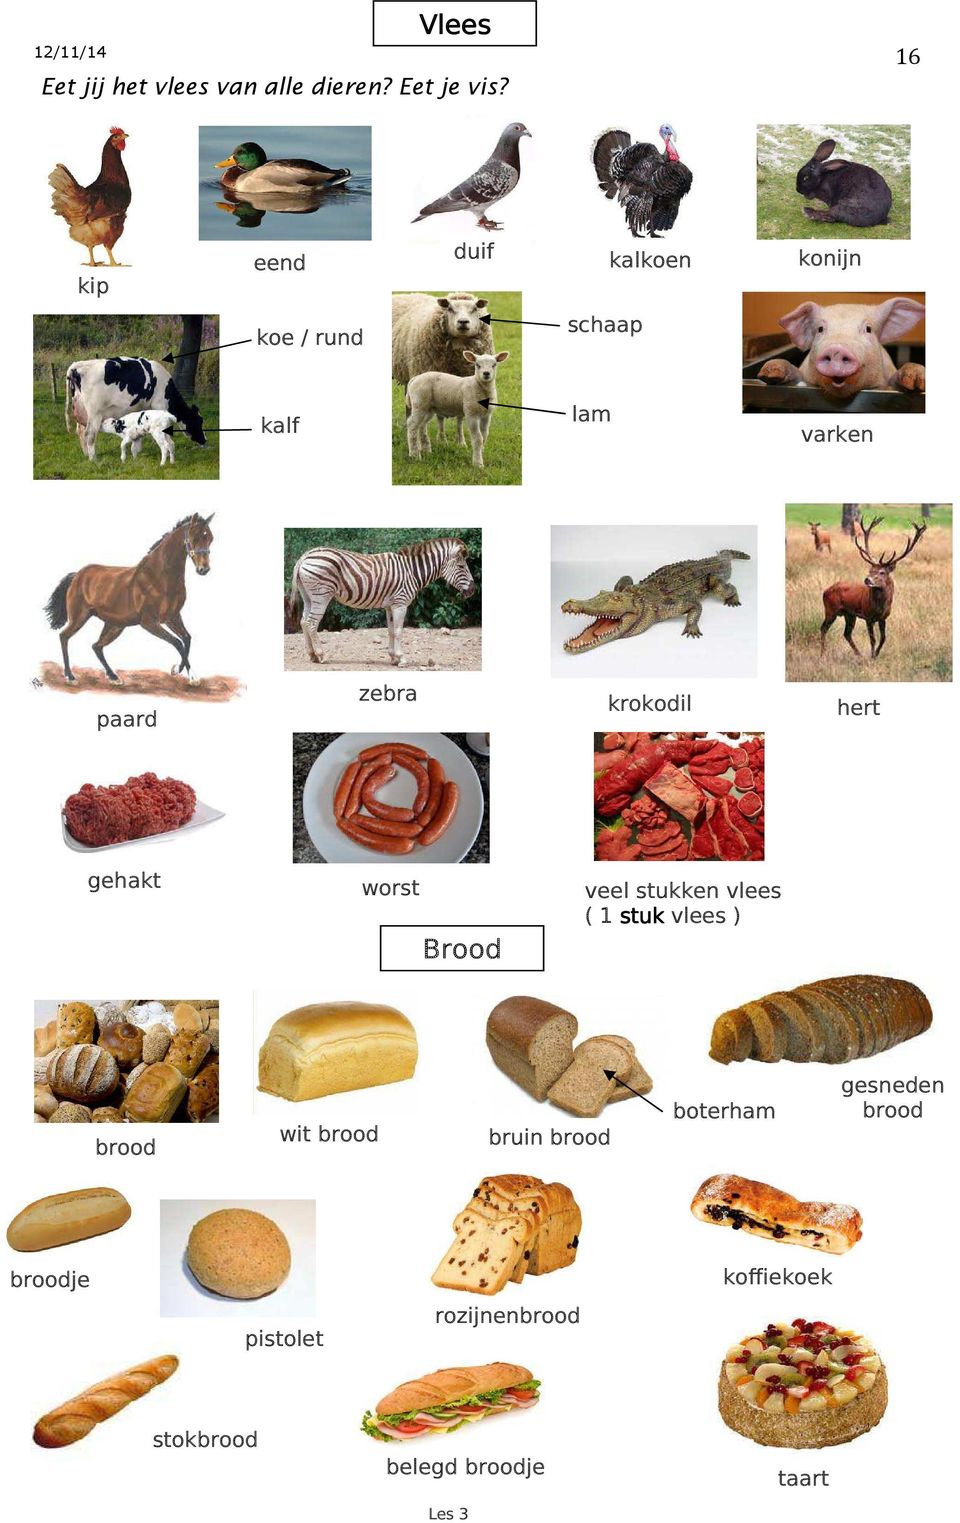 krokodil hert gehakt worst veel stukken vlees ( 1 stuk vlees ) Brood brood wit